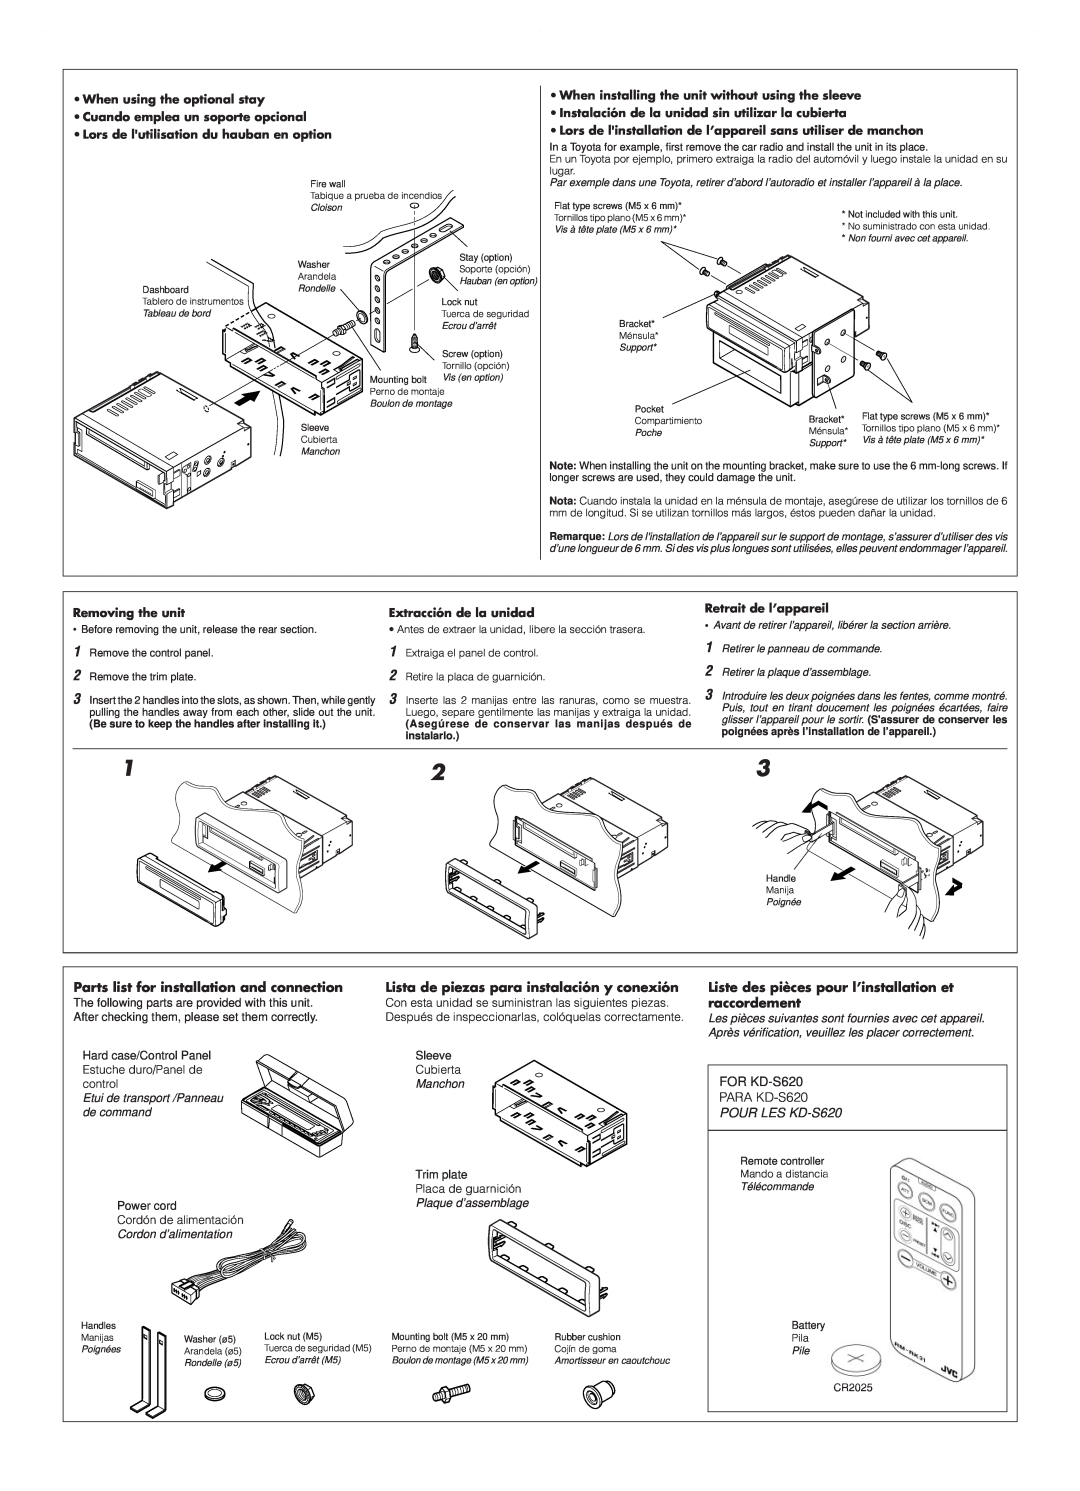 JVC KD-S620 Parts list for installation and connection, Lista de piezas para instalación y conexión, Removing the unit 